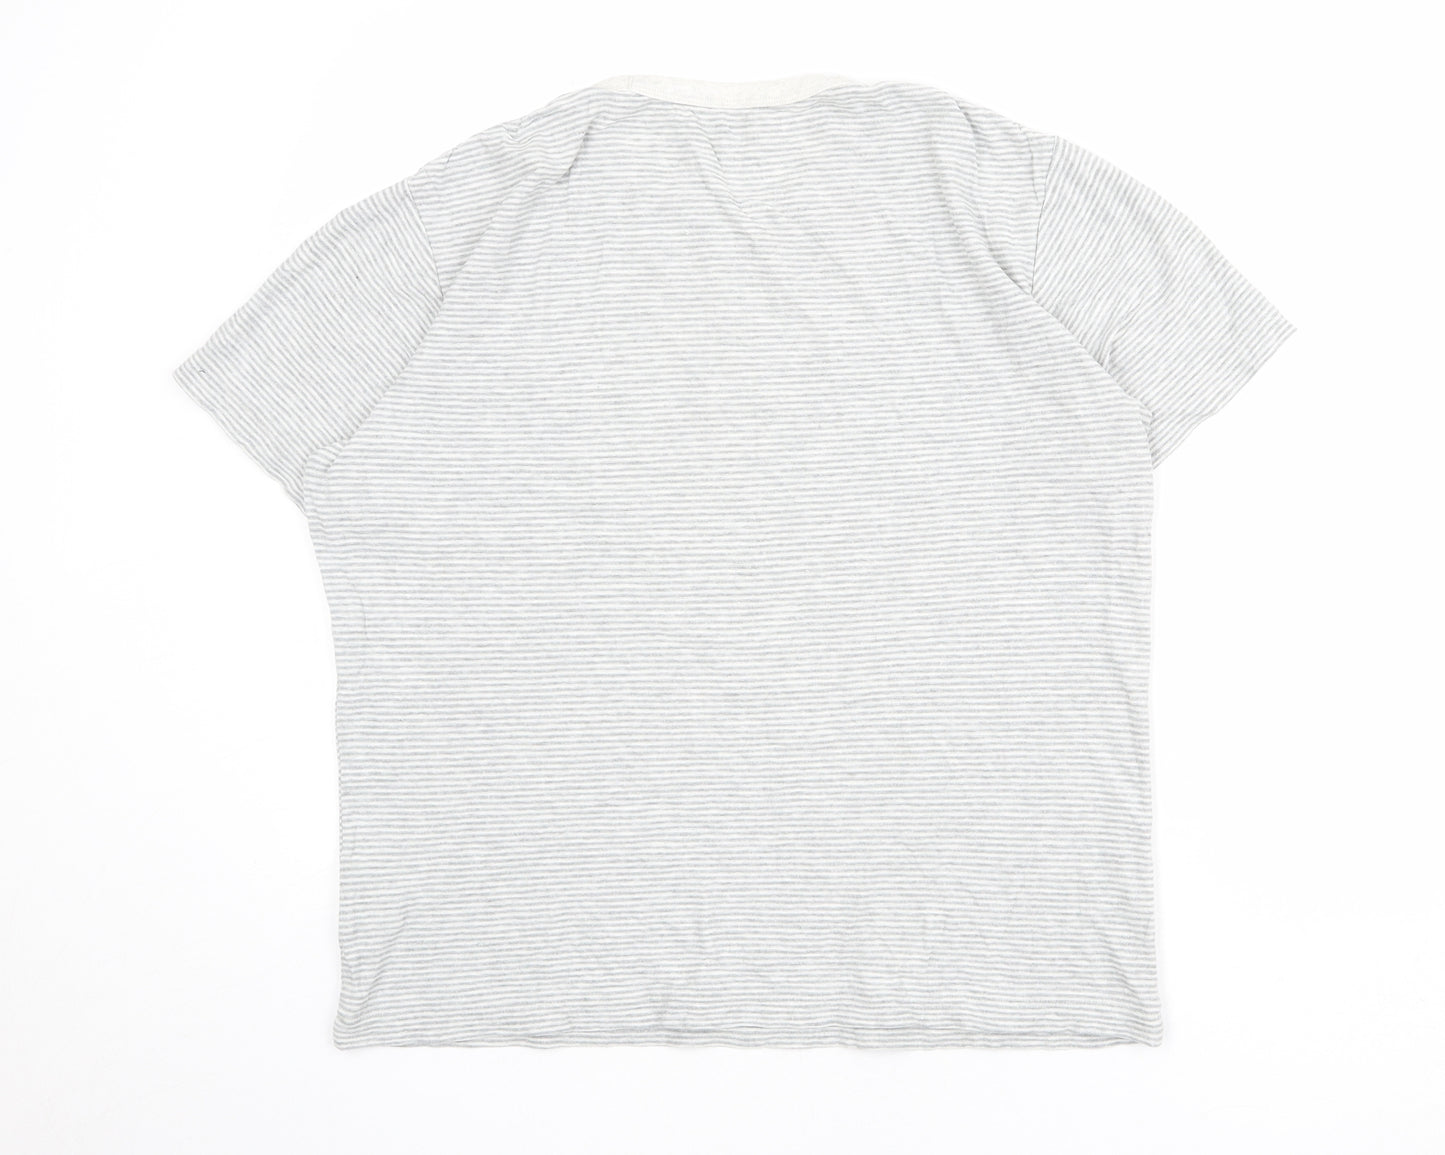 Uniqlo Mens Grey Striped Cotton T-Shirt Size M Crew Neck